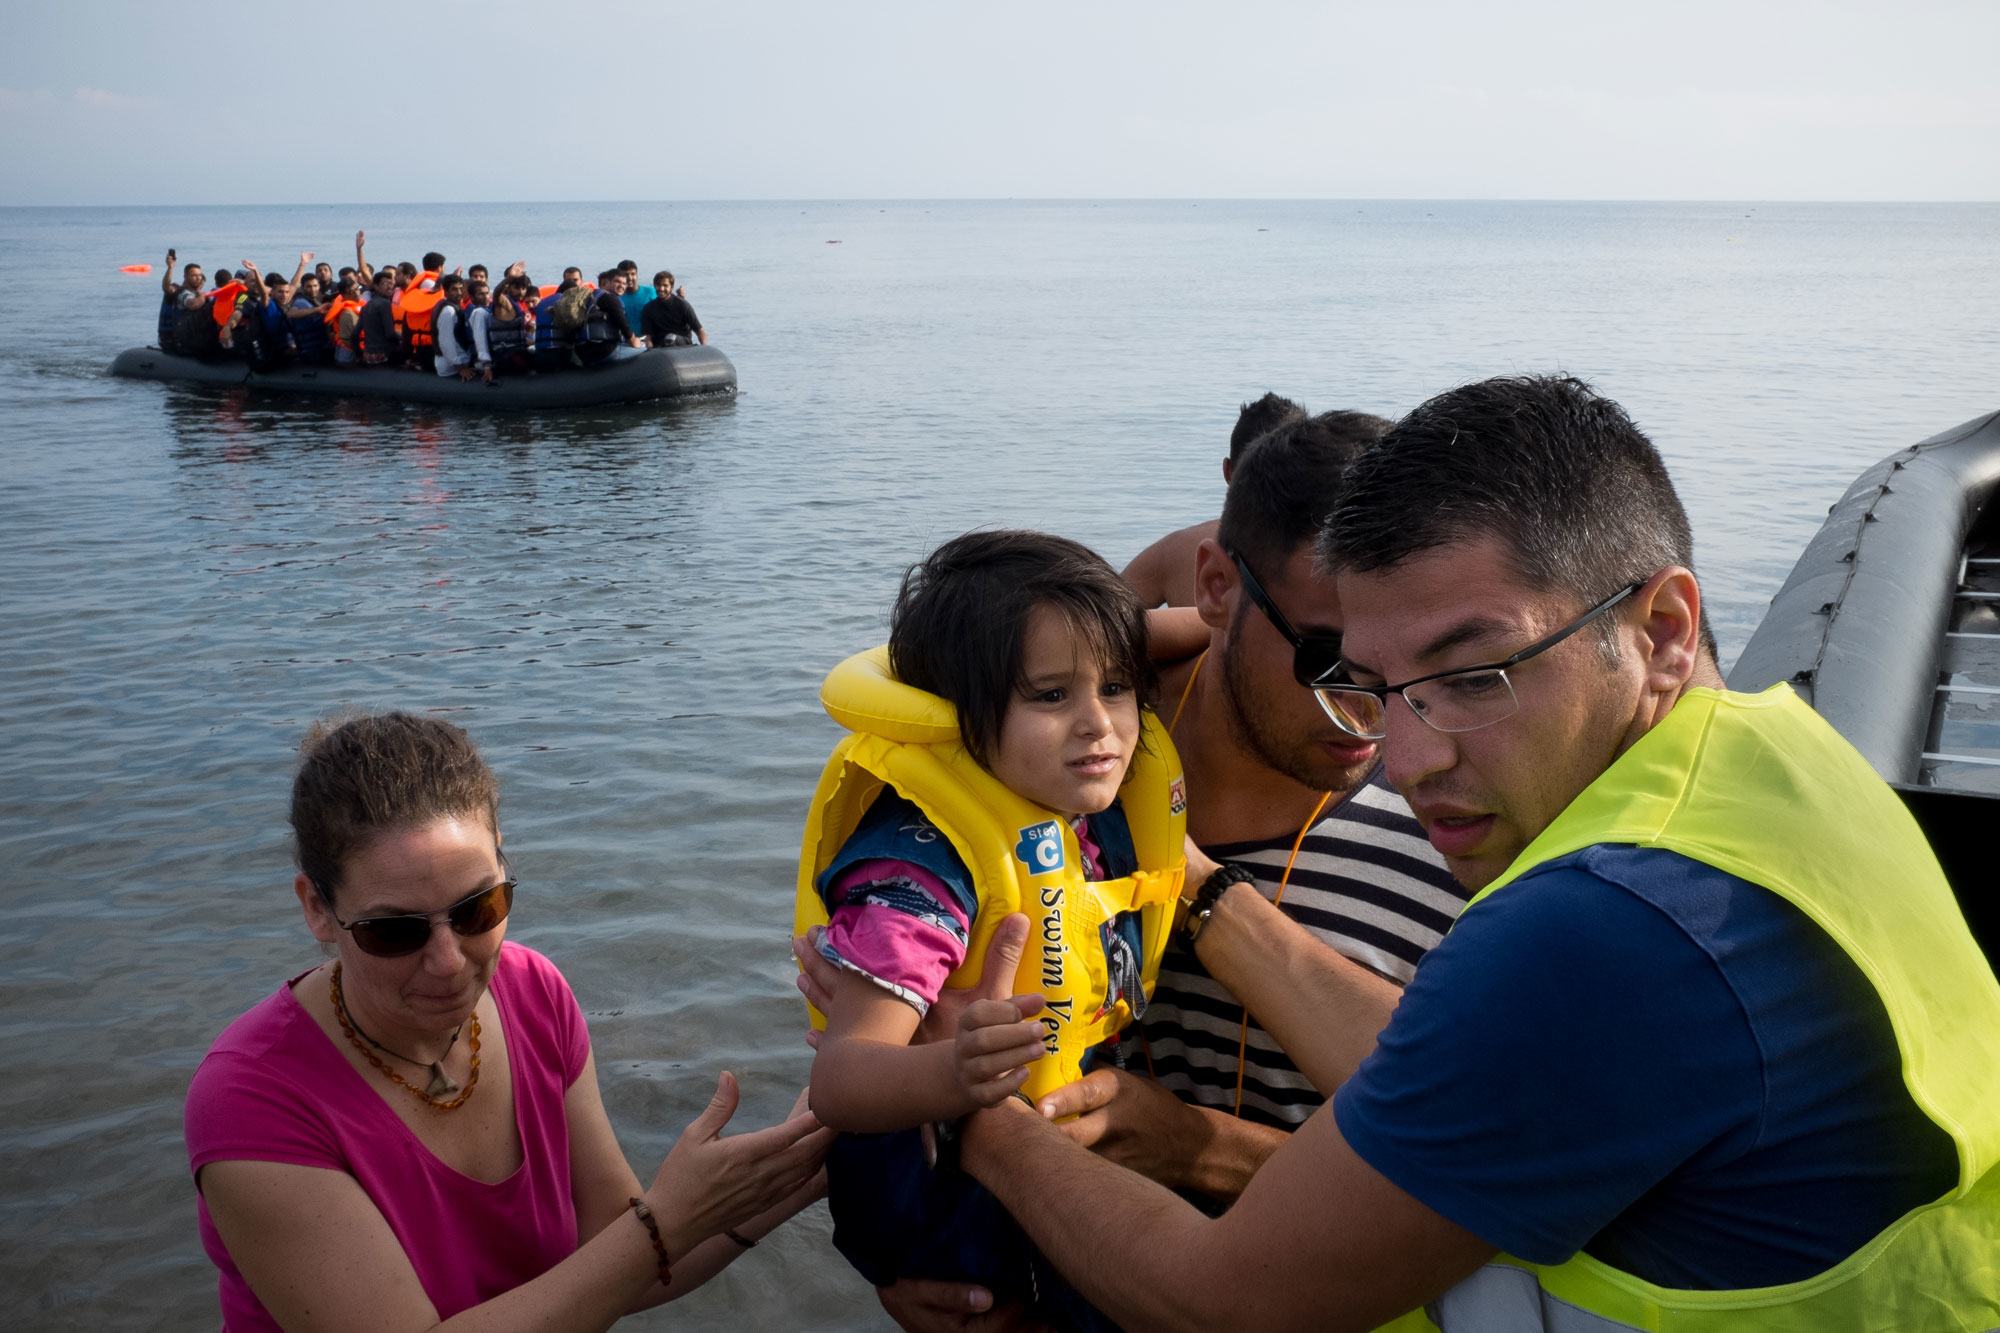 من الأرشيف: متطوع يساعد اللاجئين الوافدين حديثاً على النزول من قارب مطاطي كبير في جزيرة ليسبوس في منطقة شمال بحر إيجه. 